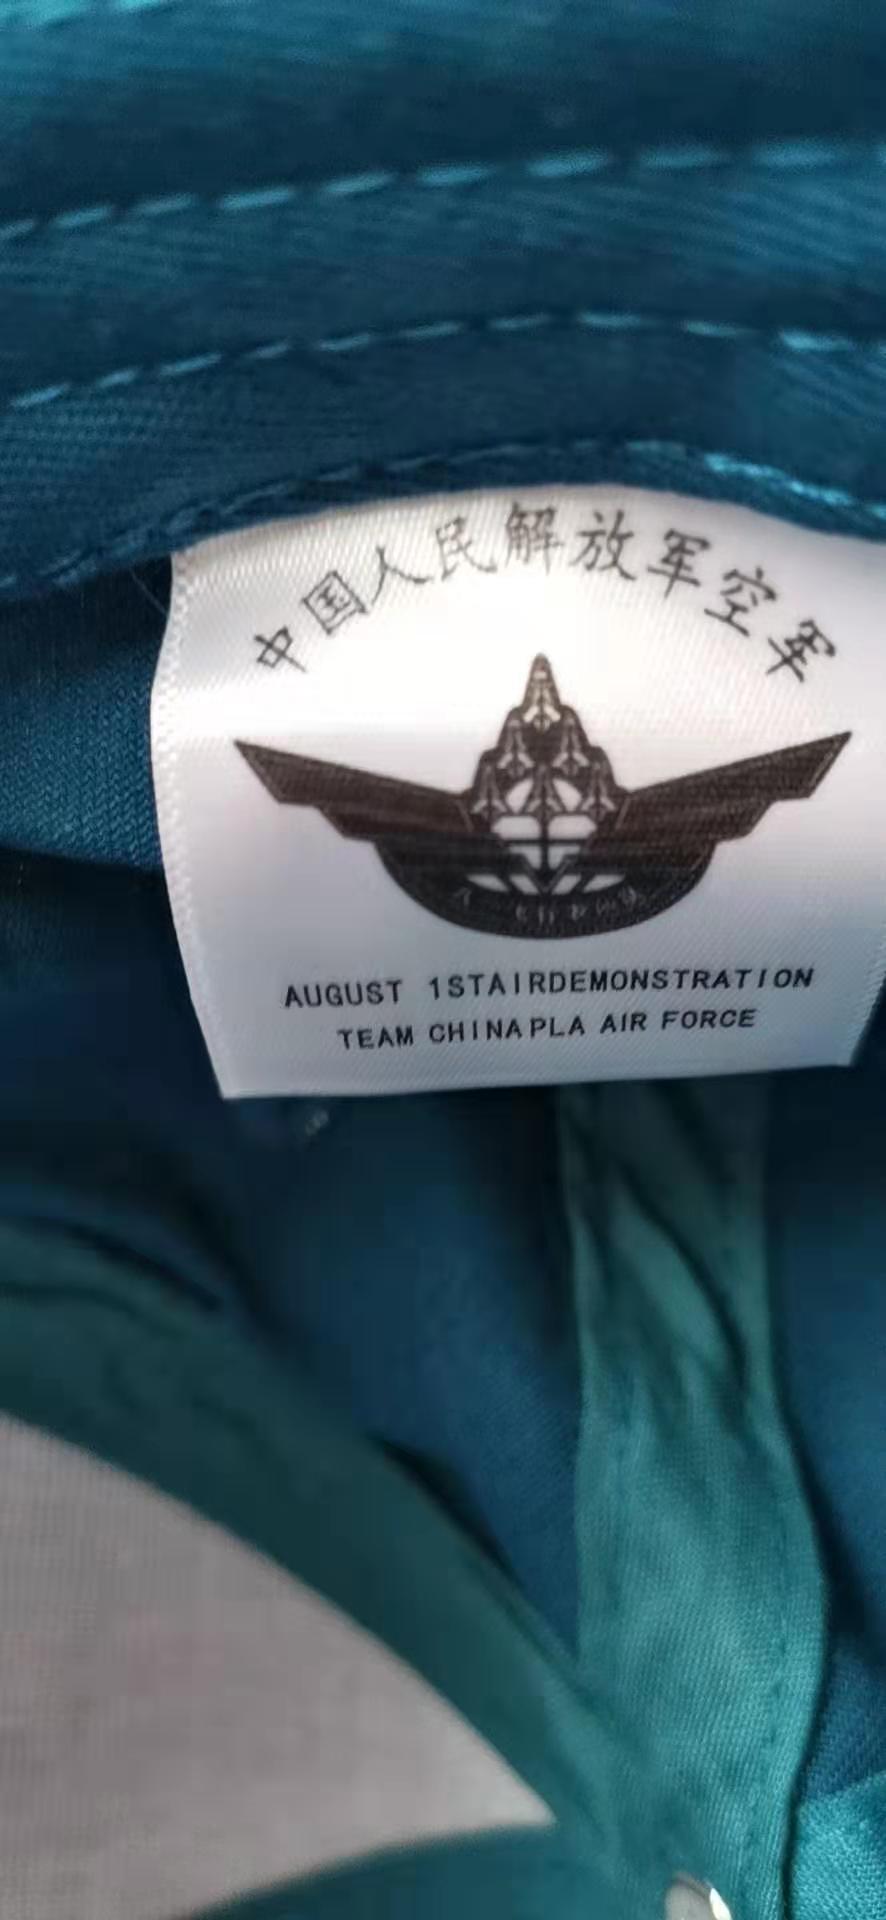 参加连飞活动获得八一飞行表演队帽子，赞-3669 